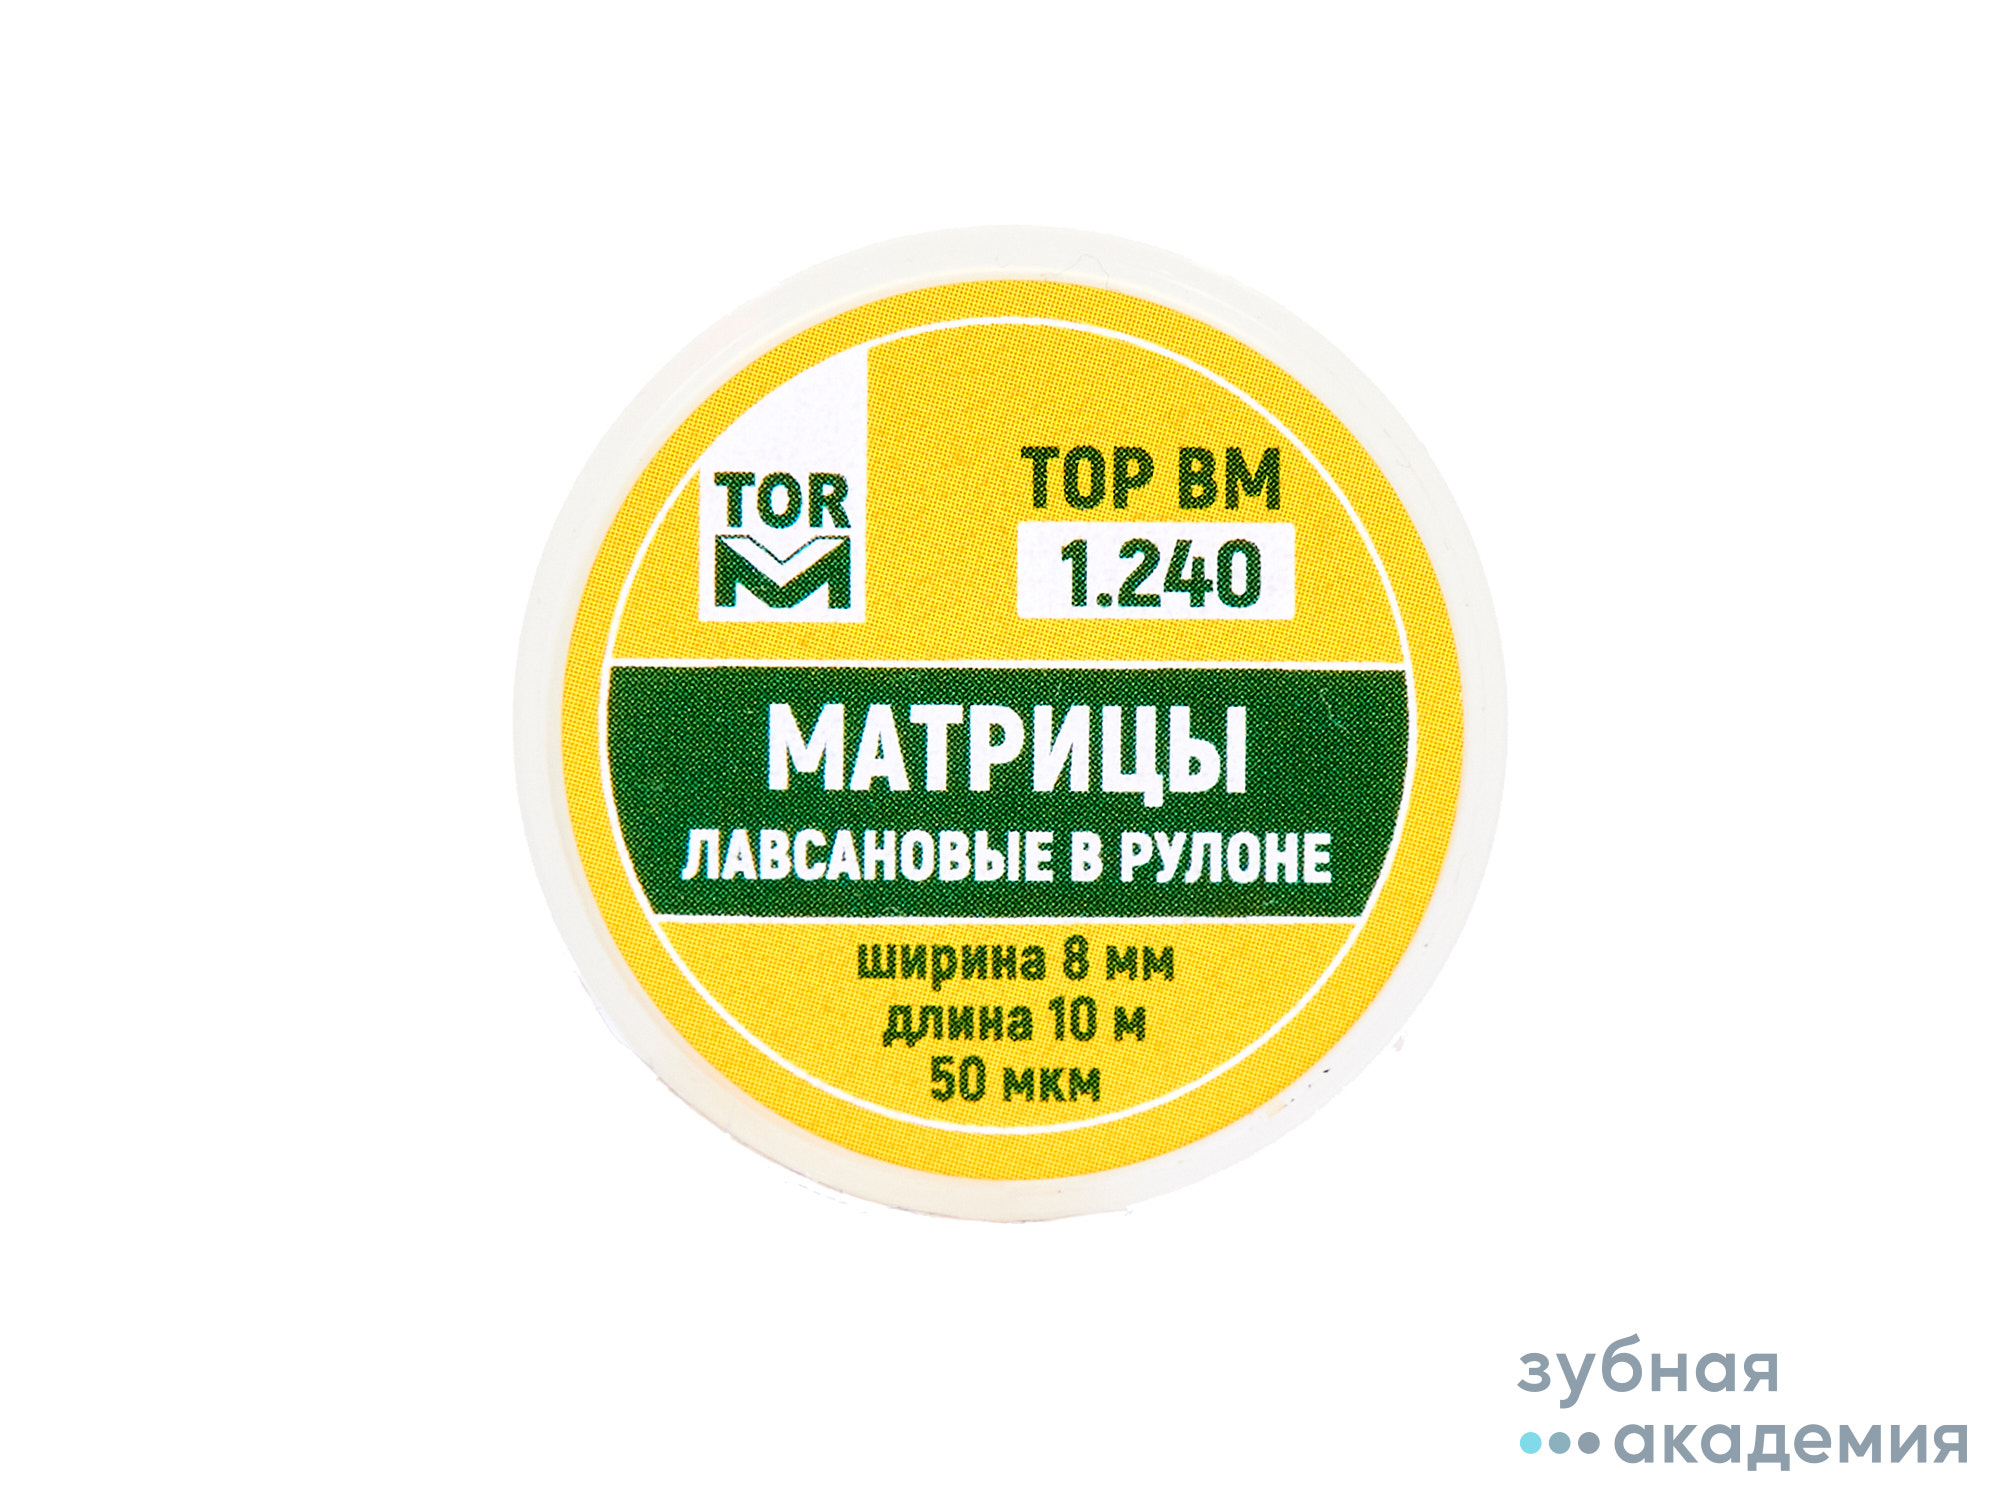 ТОР Матрицы № 1.240 упаковка 10 м /ТОР ВМ/ Россия